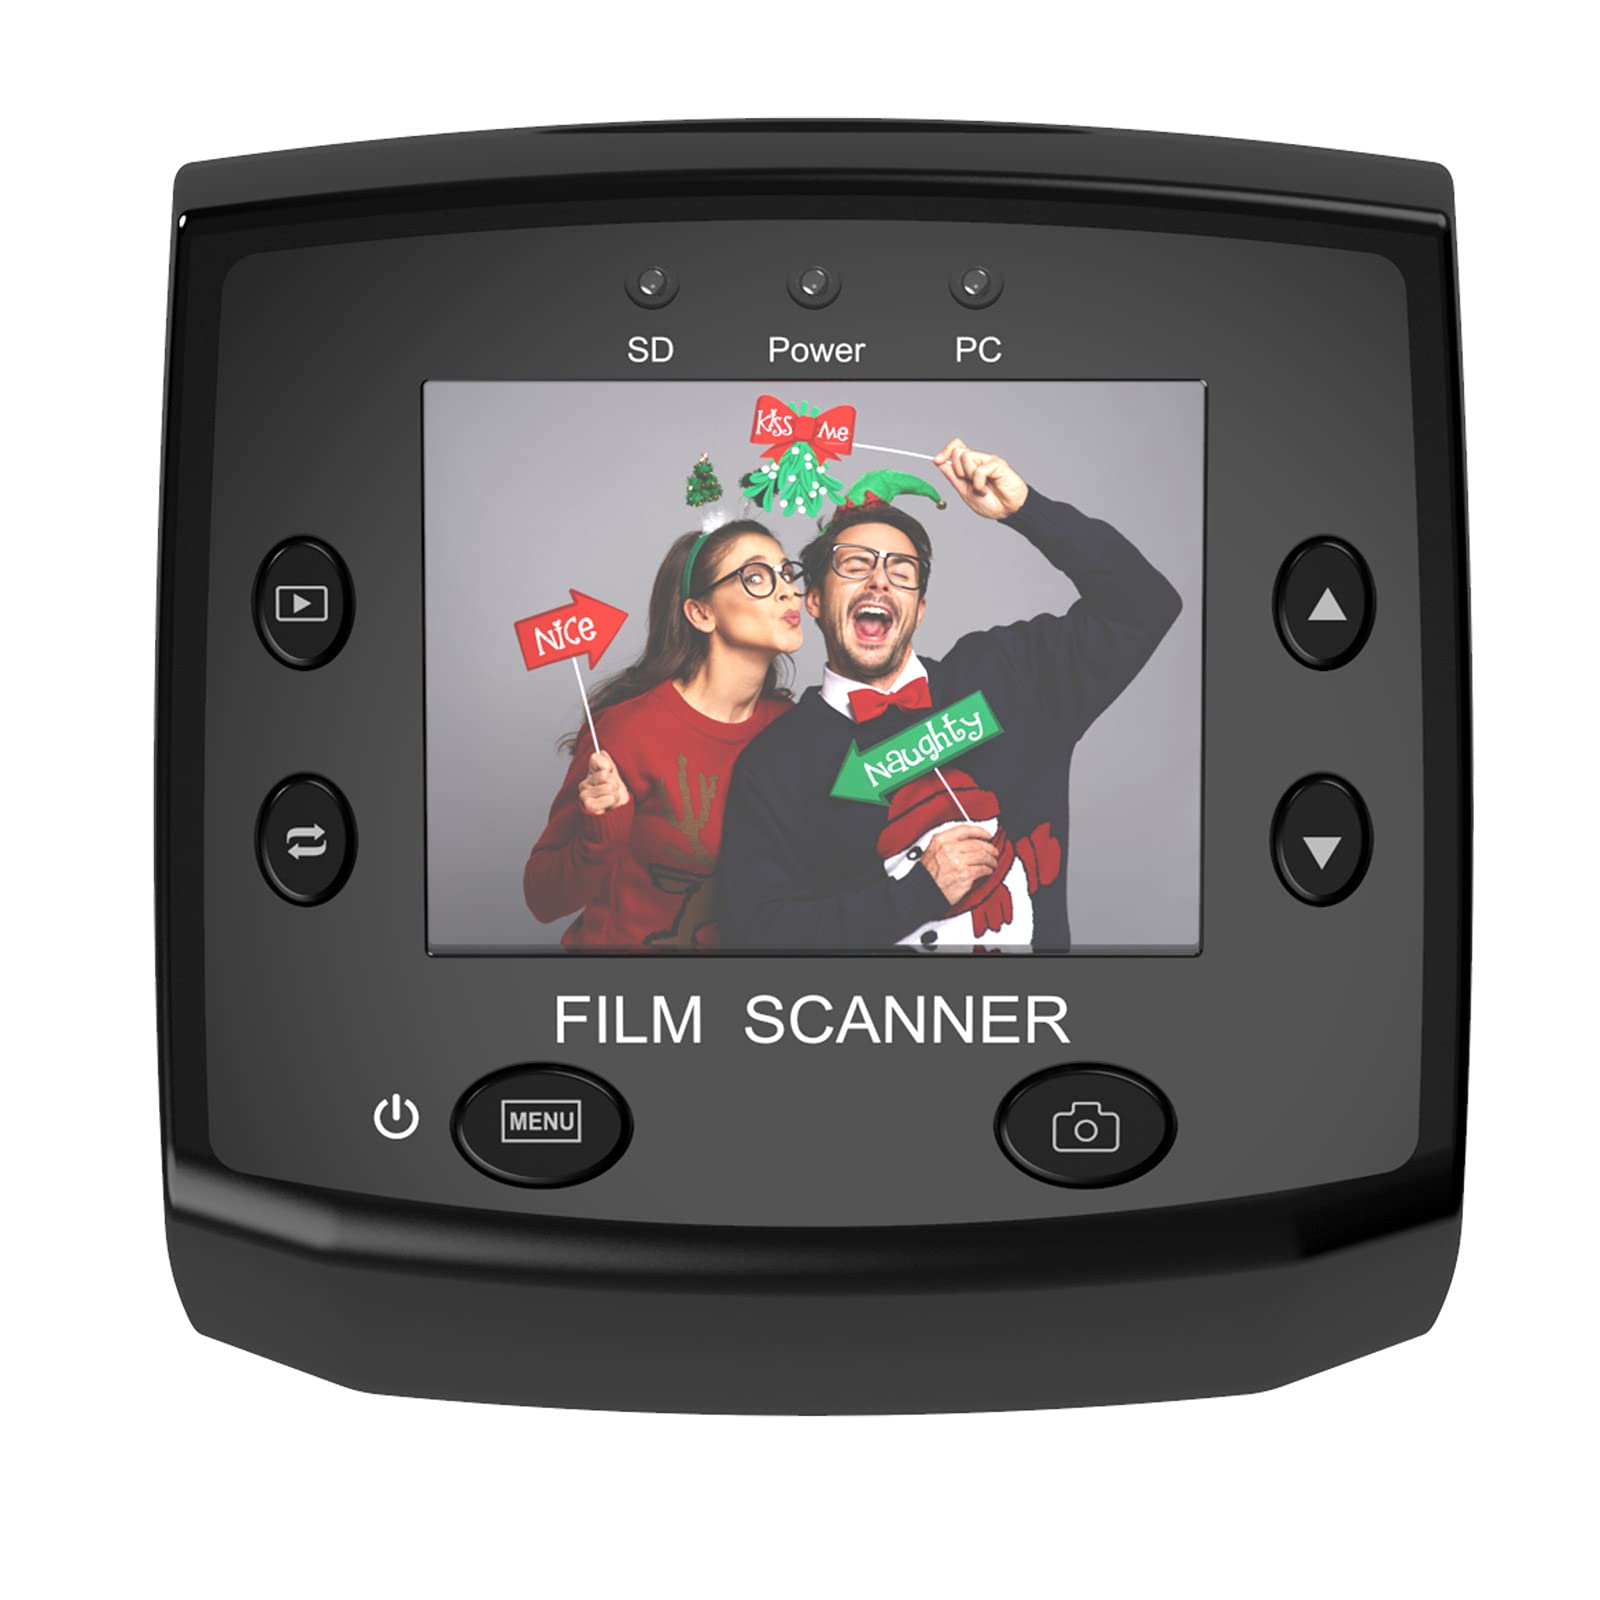 DIGITNOW! Scanner de Diapositives et Négatifs 35 mm,Convertisseur de Film à  Images Numériques 5MP/10MP JPEG avec 2,4'' Écran - Pas d'ordinateur Requis